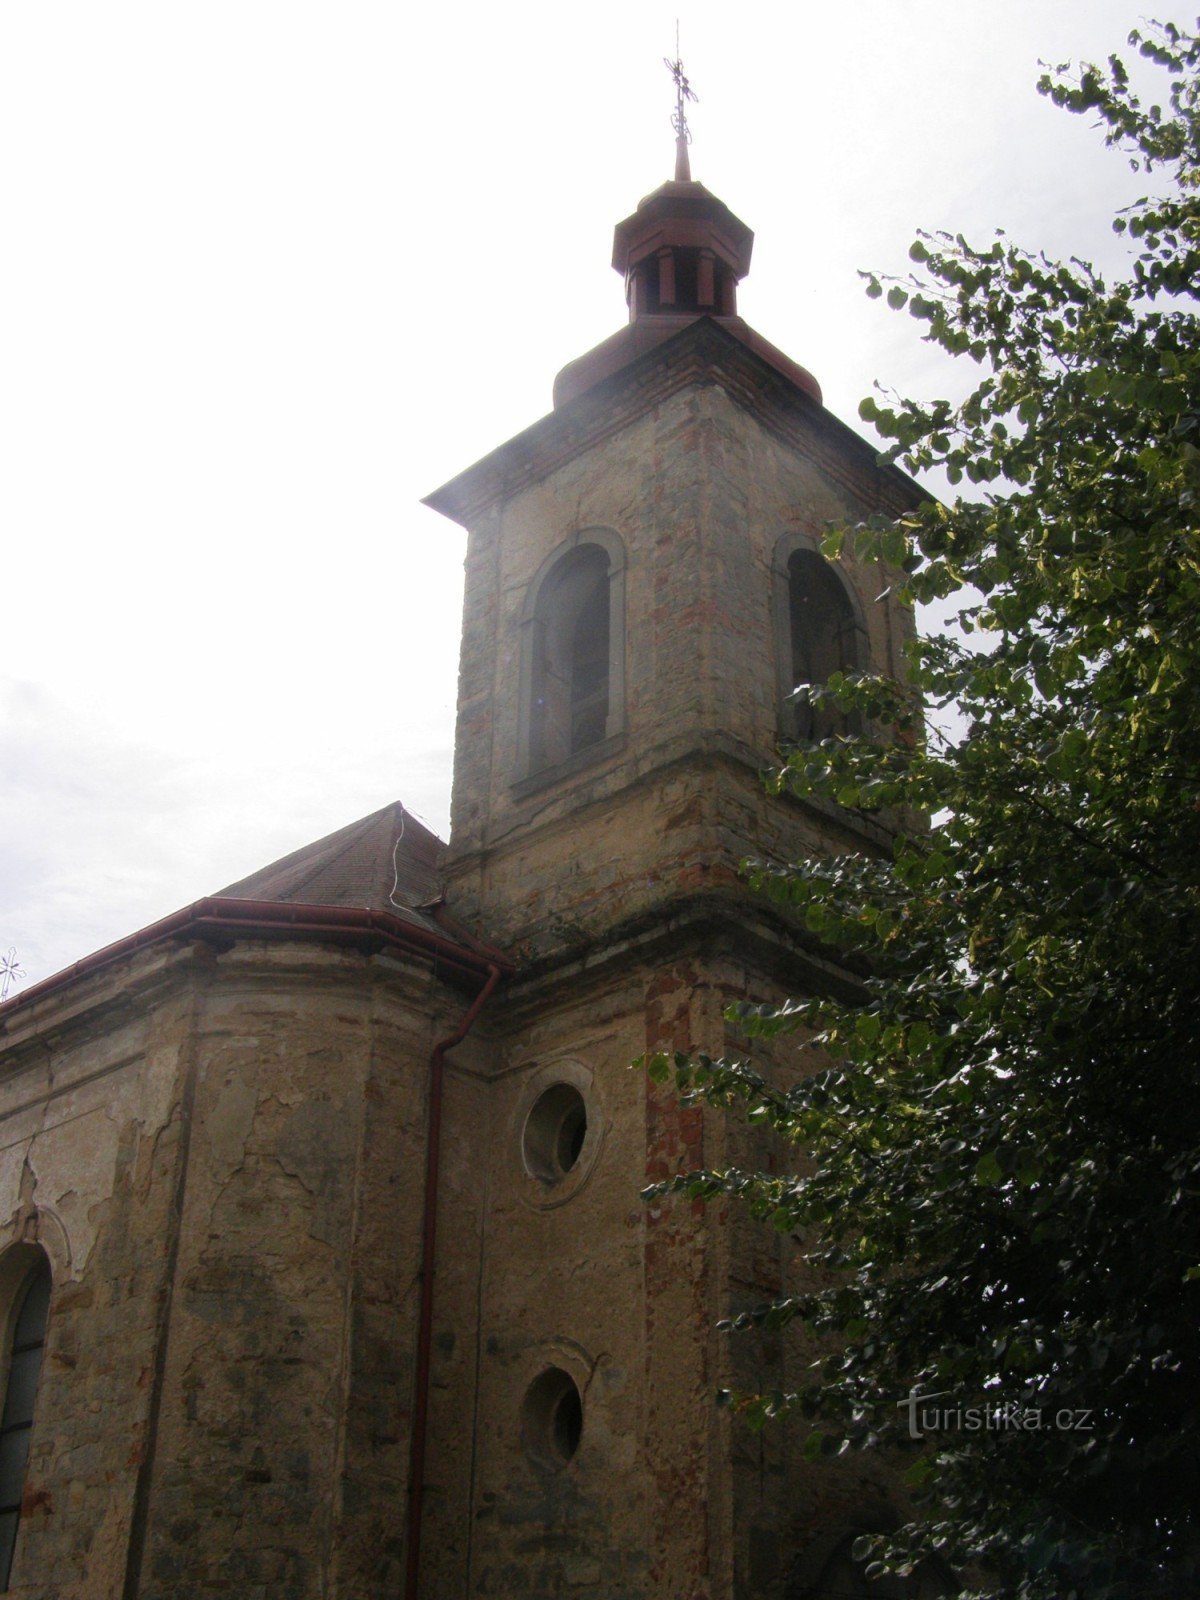 Dolany (JC) - Iglesia de St. mateo